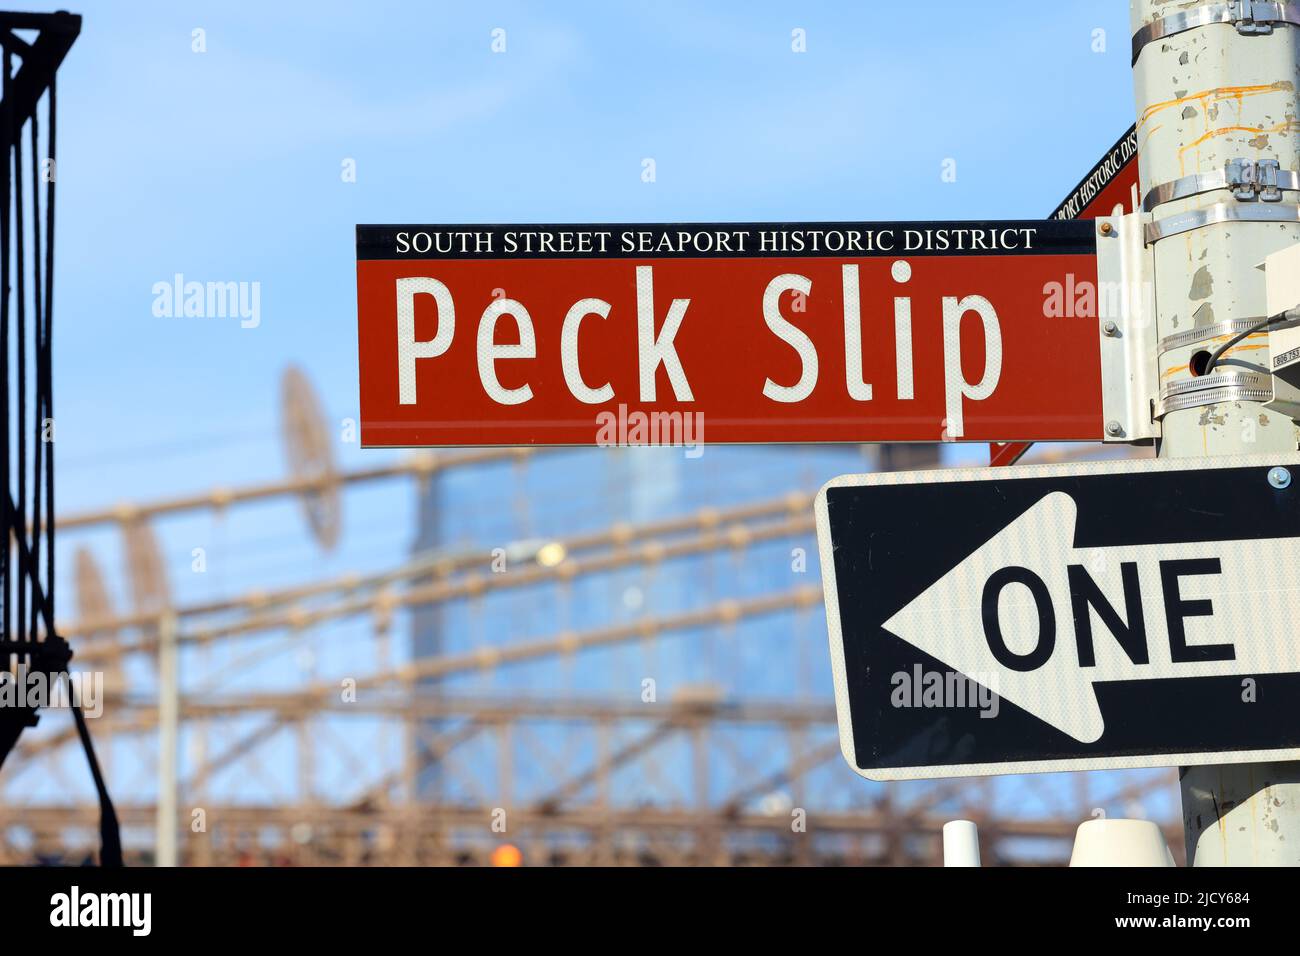 Cartel de la calle Peck Slip en el distrito histórico de South Street Seaport, Manhattan, Nueva York. Foto de stock